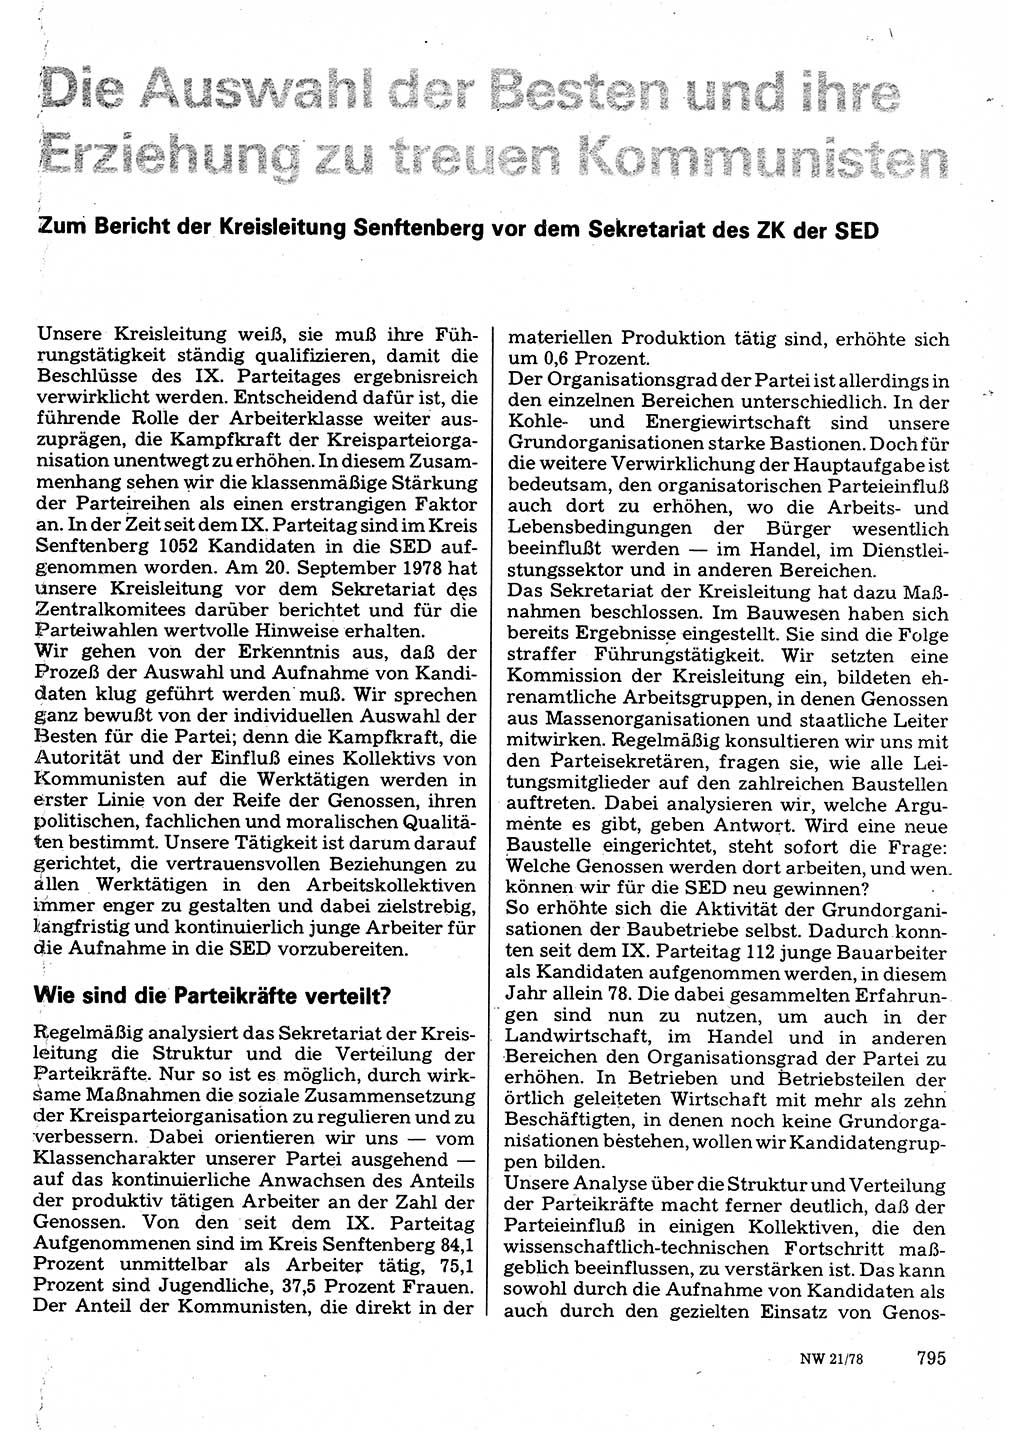 Neuer Weg (NW), Organ des Zentralkomitees (ZK) der SED (Sozialistische Einheitspartei Deutschlands) für Fragen des Parteilebens, 33. Jahrgang [Deutsche Demokratische Republik (DDR)] 1978, Seite 795 (NW ZK SED DDR 1978, S. 795)